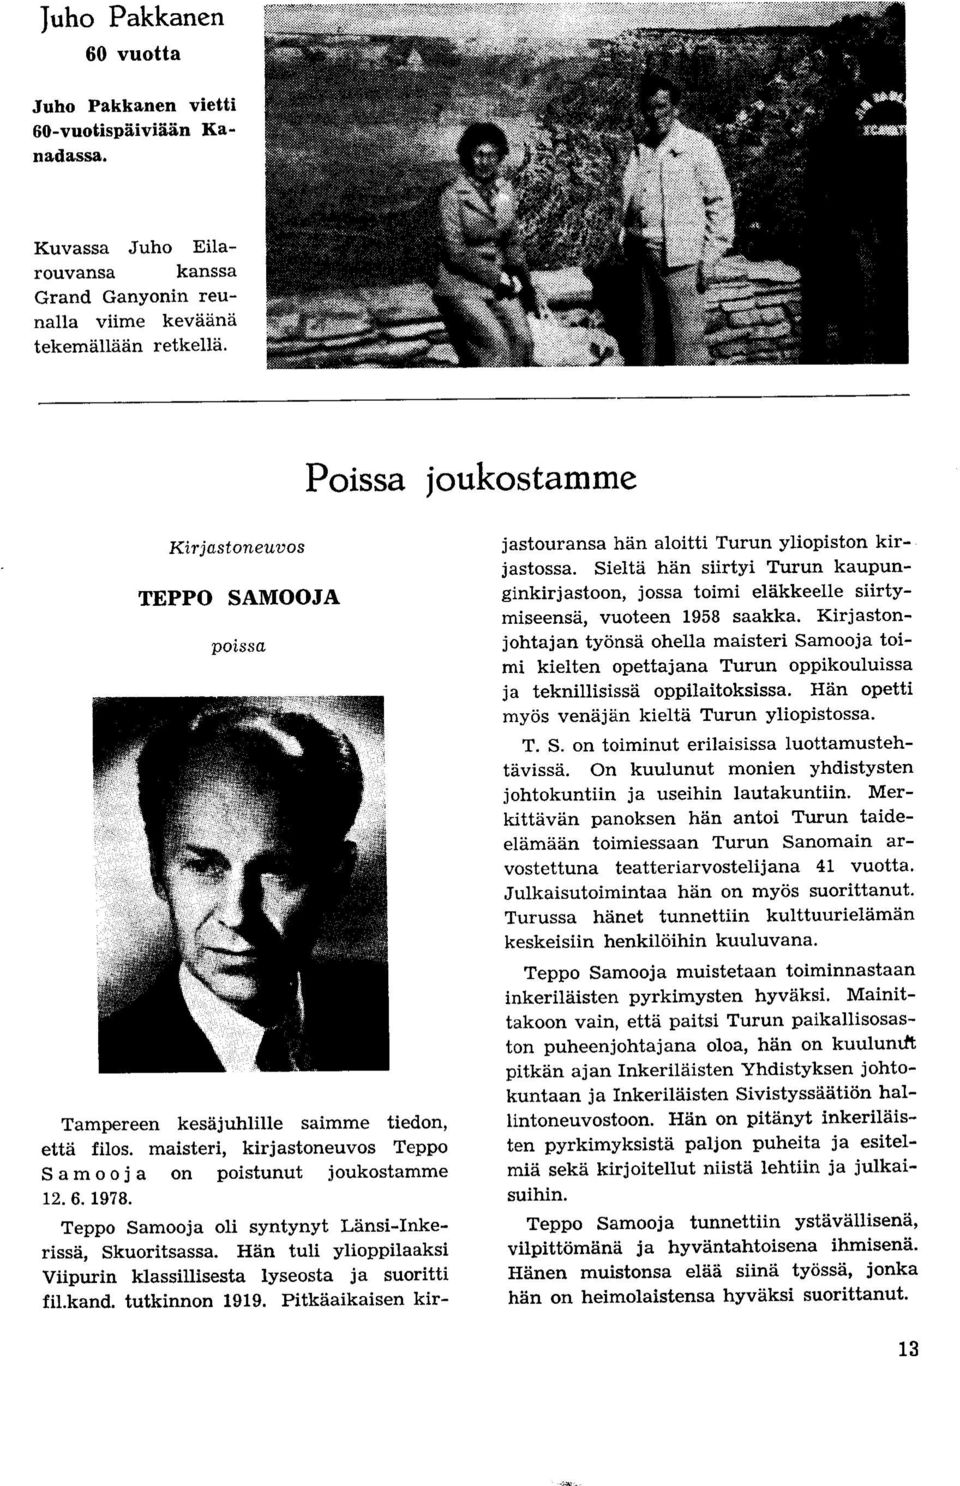 Teppo Samooja oli syntynyt Lansi-Inkerissa, Skuoritsassa. Han tuli ylioppilaaksi Viipurin klassillisesta lyseosta ja suoritti fil.kand. tutkinnon 1919.